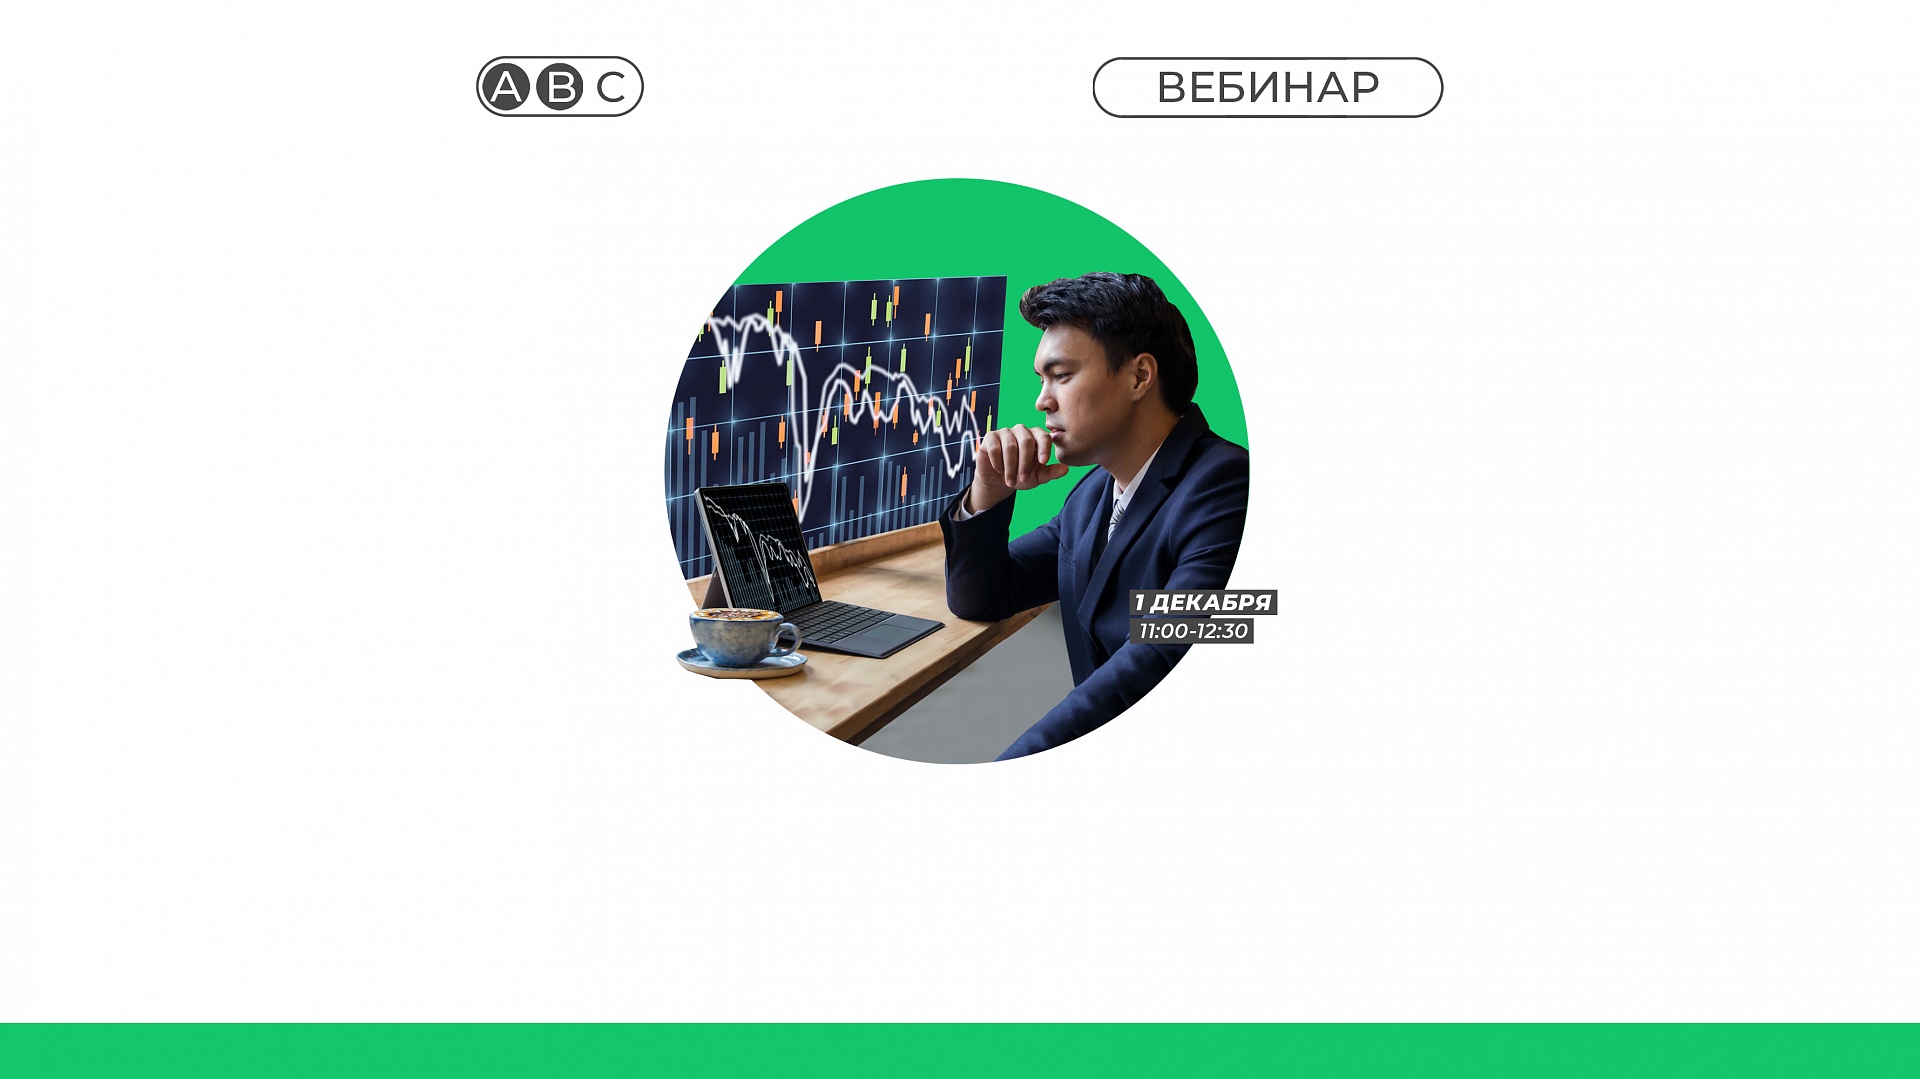 Вебинар Банка России «Как малый и средний бизнес может привлечь финансирование с помощью инструментов фондового рынка»